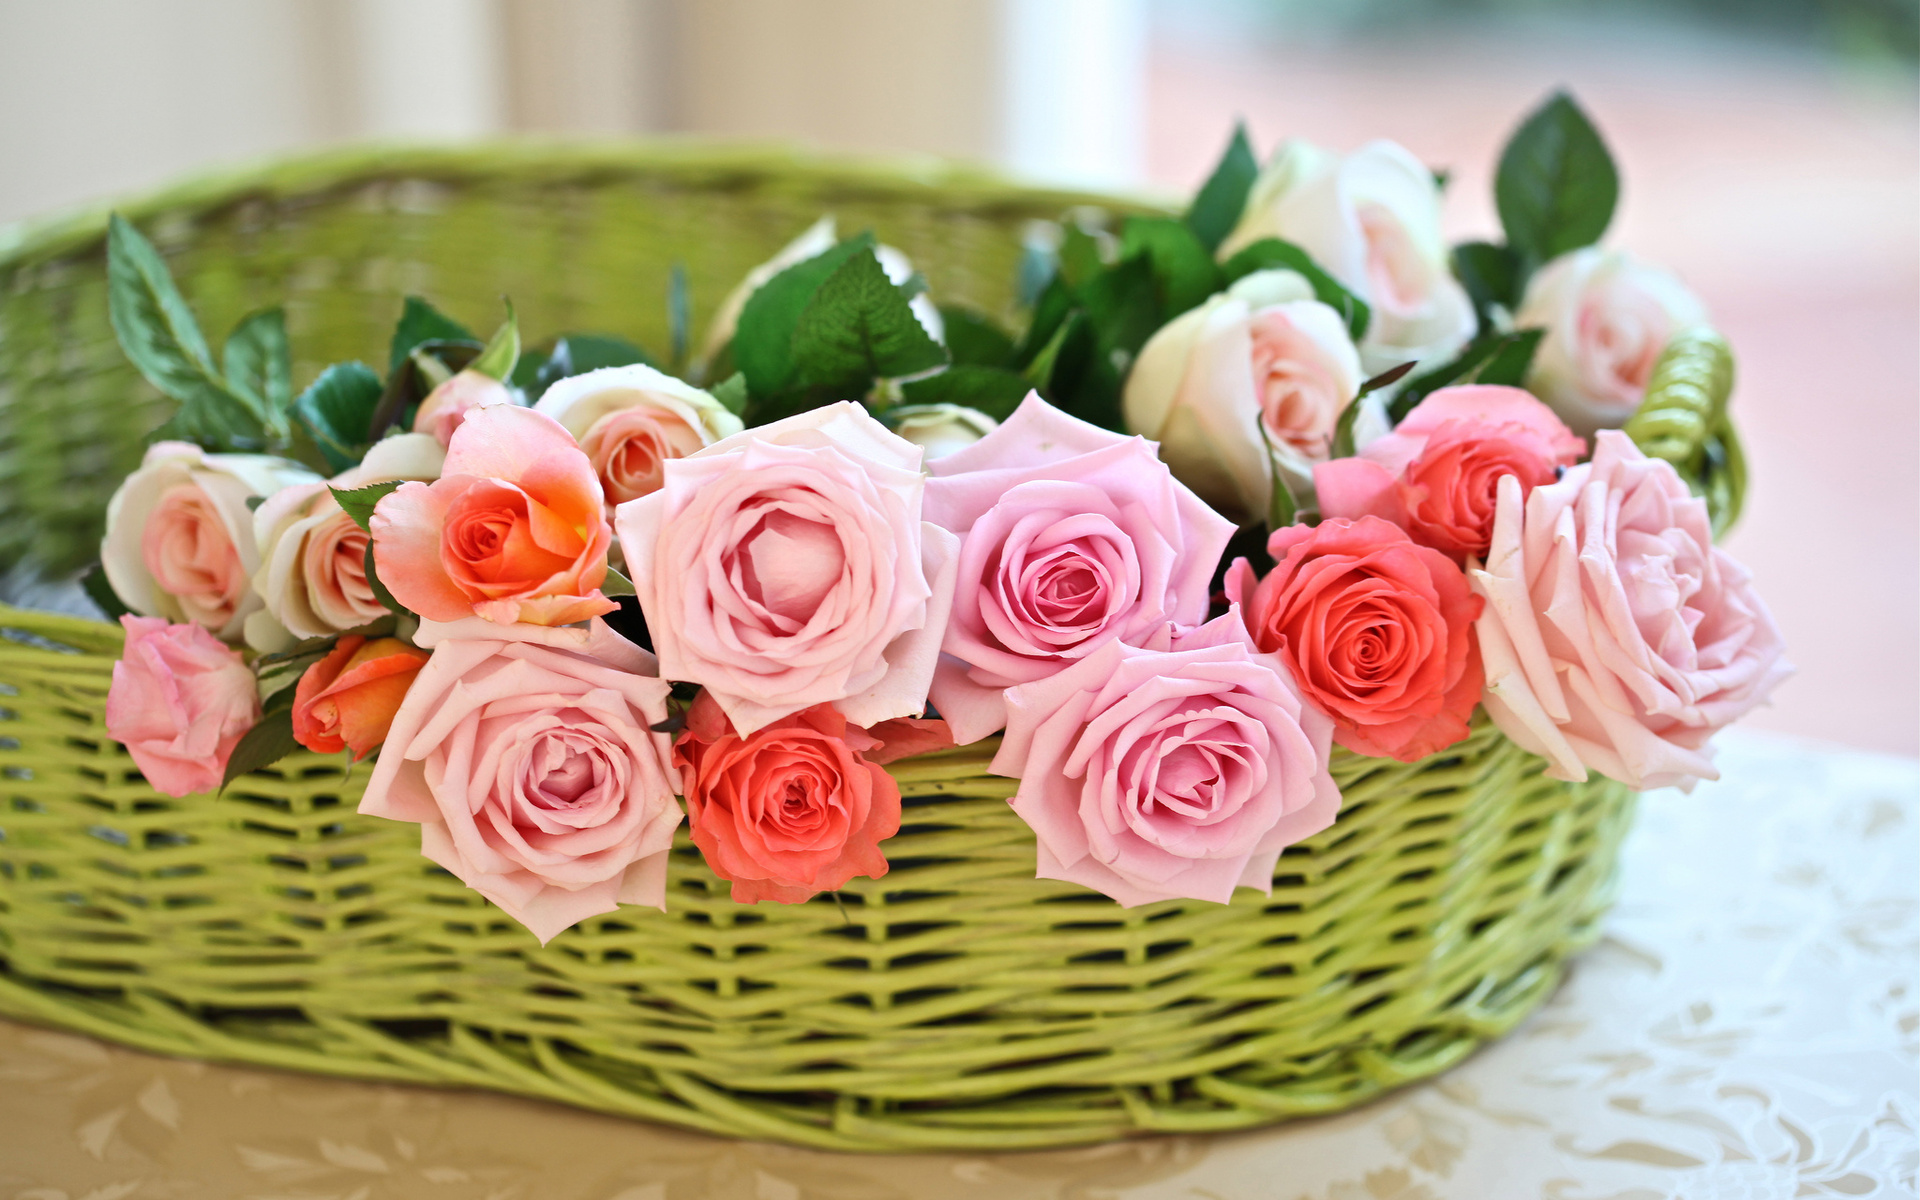 Bó hoa với sắc hoa tươi thắm và bố trí tinh tế chắc chắn sẽ làm bạn ngất ngây. Xem bức ảnh về bó hoa hoa nhài, hoa hồng hay hoa cẩm chướng nào để cảm nhận sức mạnh của sắc hoa và nghệ thuật cắm hoa.